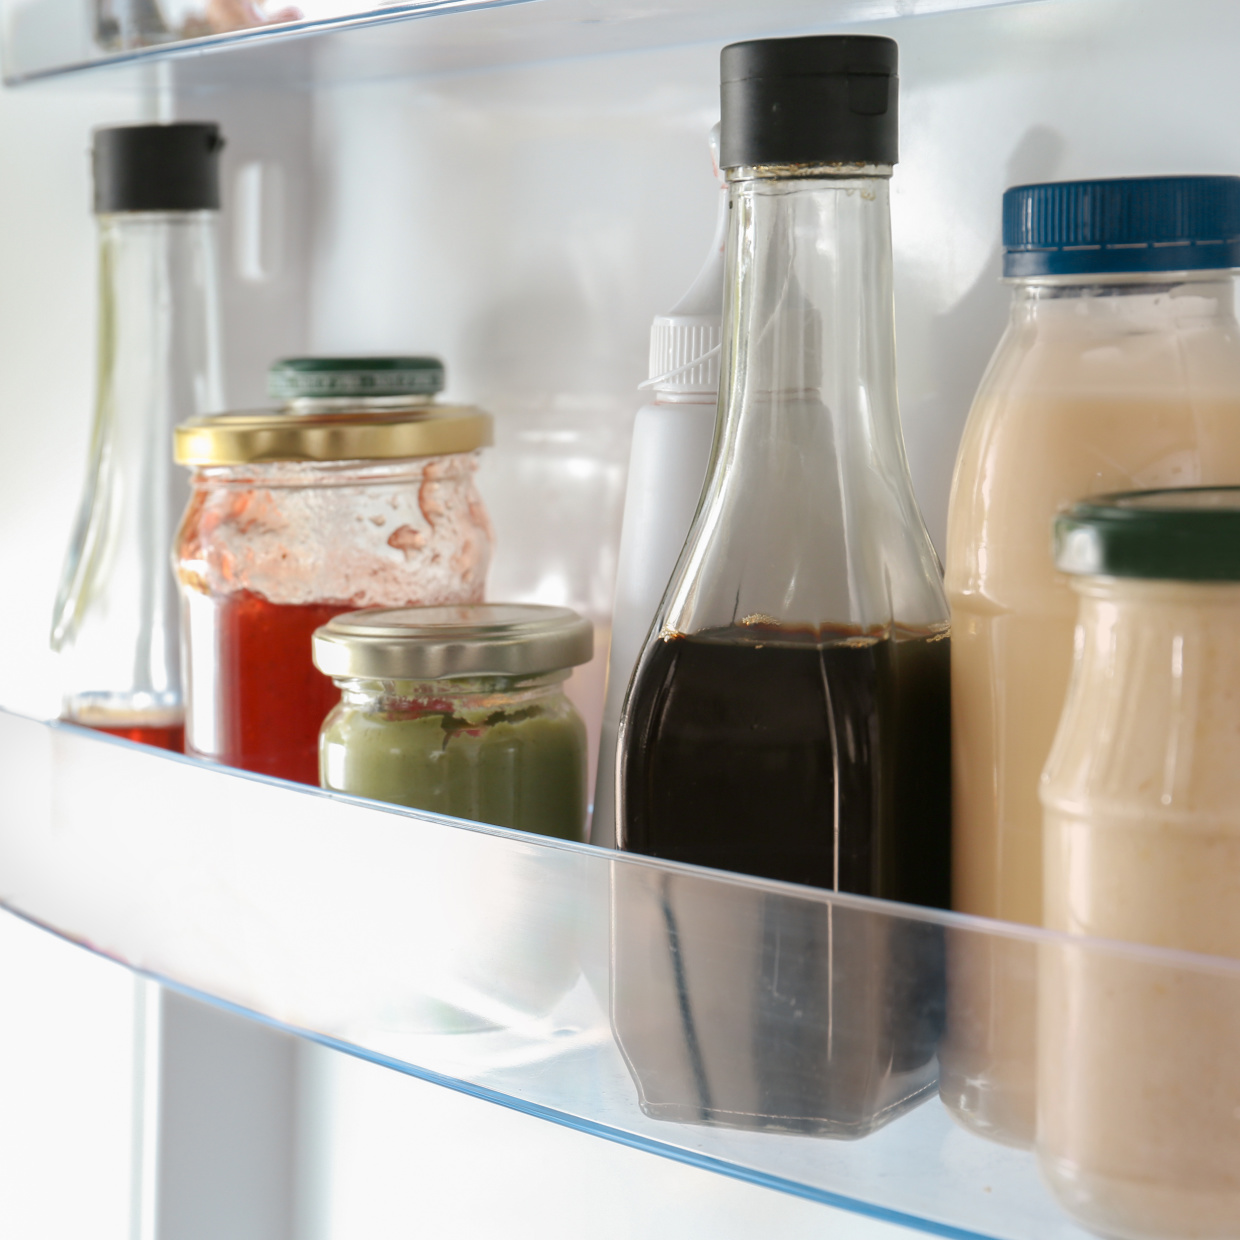  冷蔵庫で保存はNG。意外と知らない「常温保存すべき3つの調味料」 